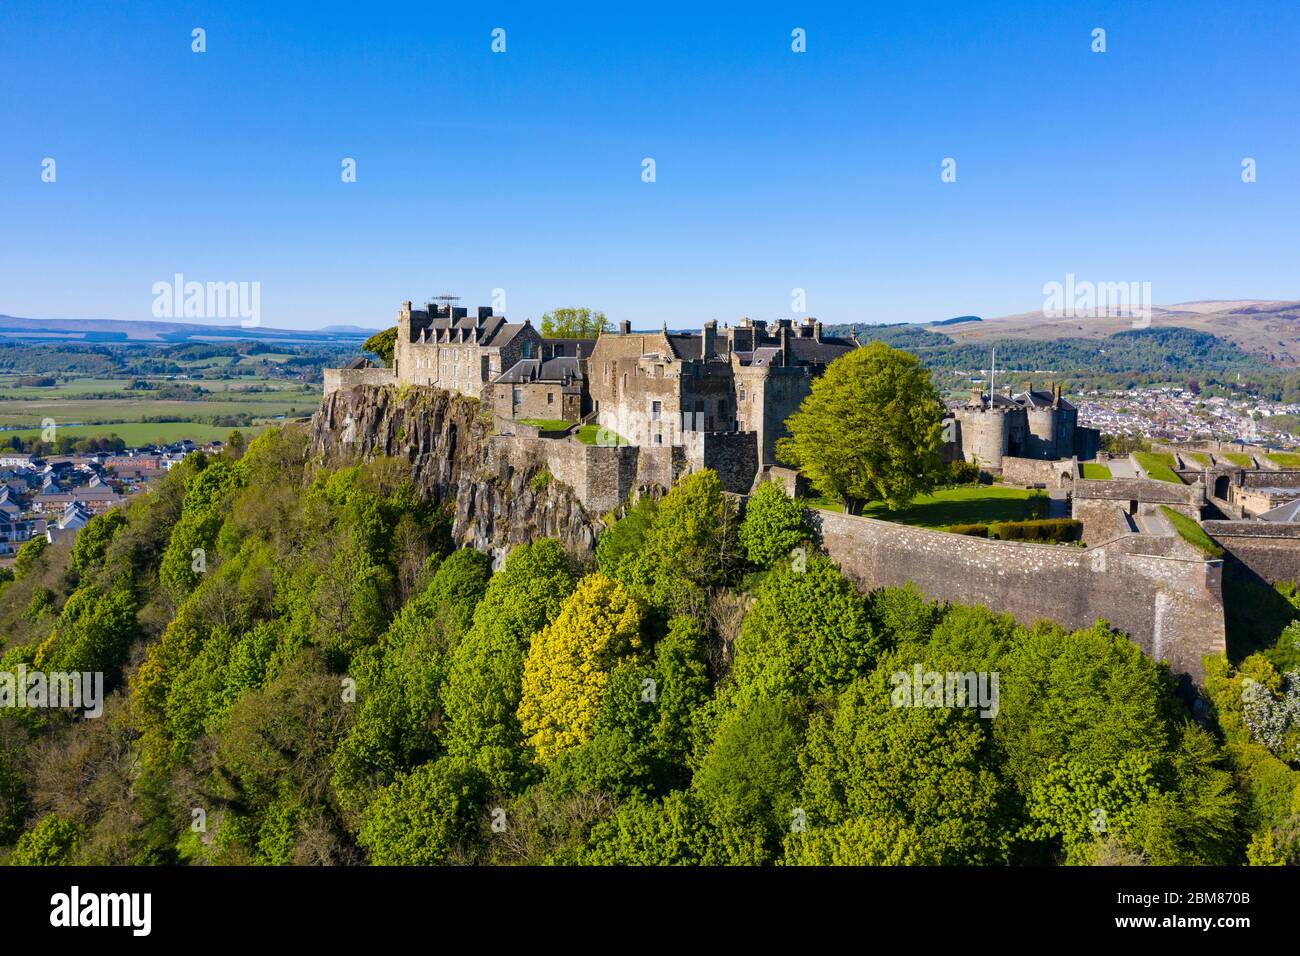 Vue aérienne du château de Stirling, fermé pendant le confinement de Covid-19 à Stirling, en Écosse, au Royaume-Uni Banque D'Images